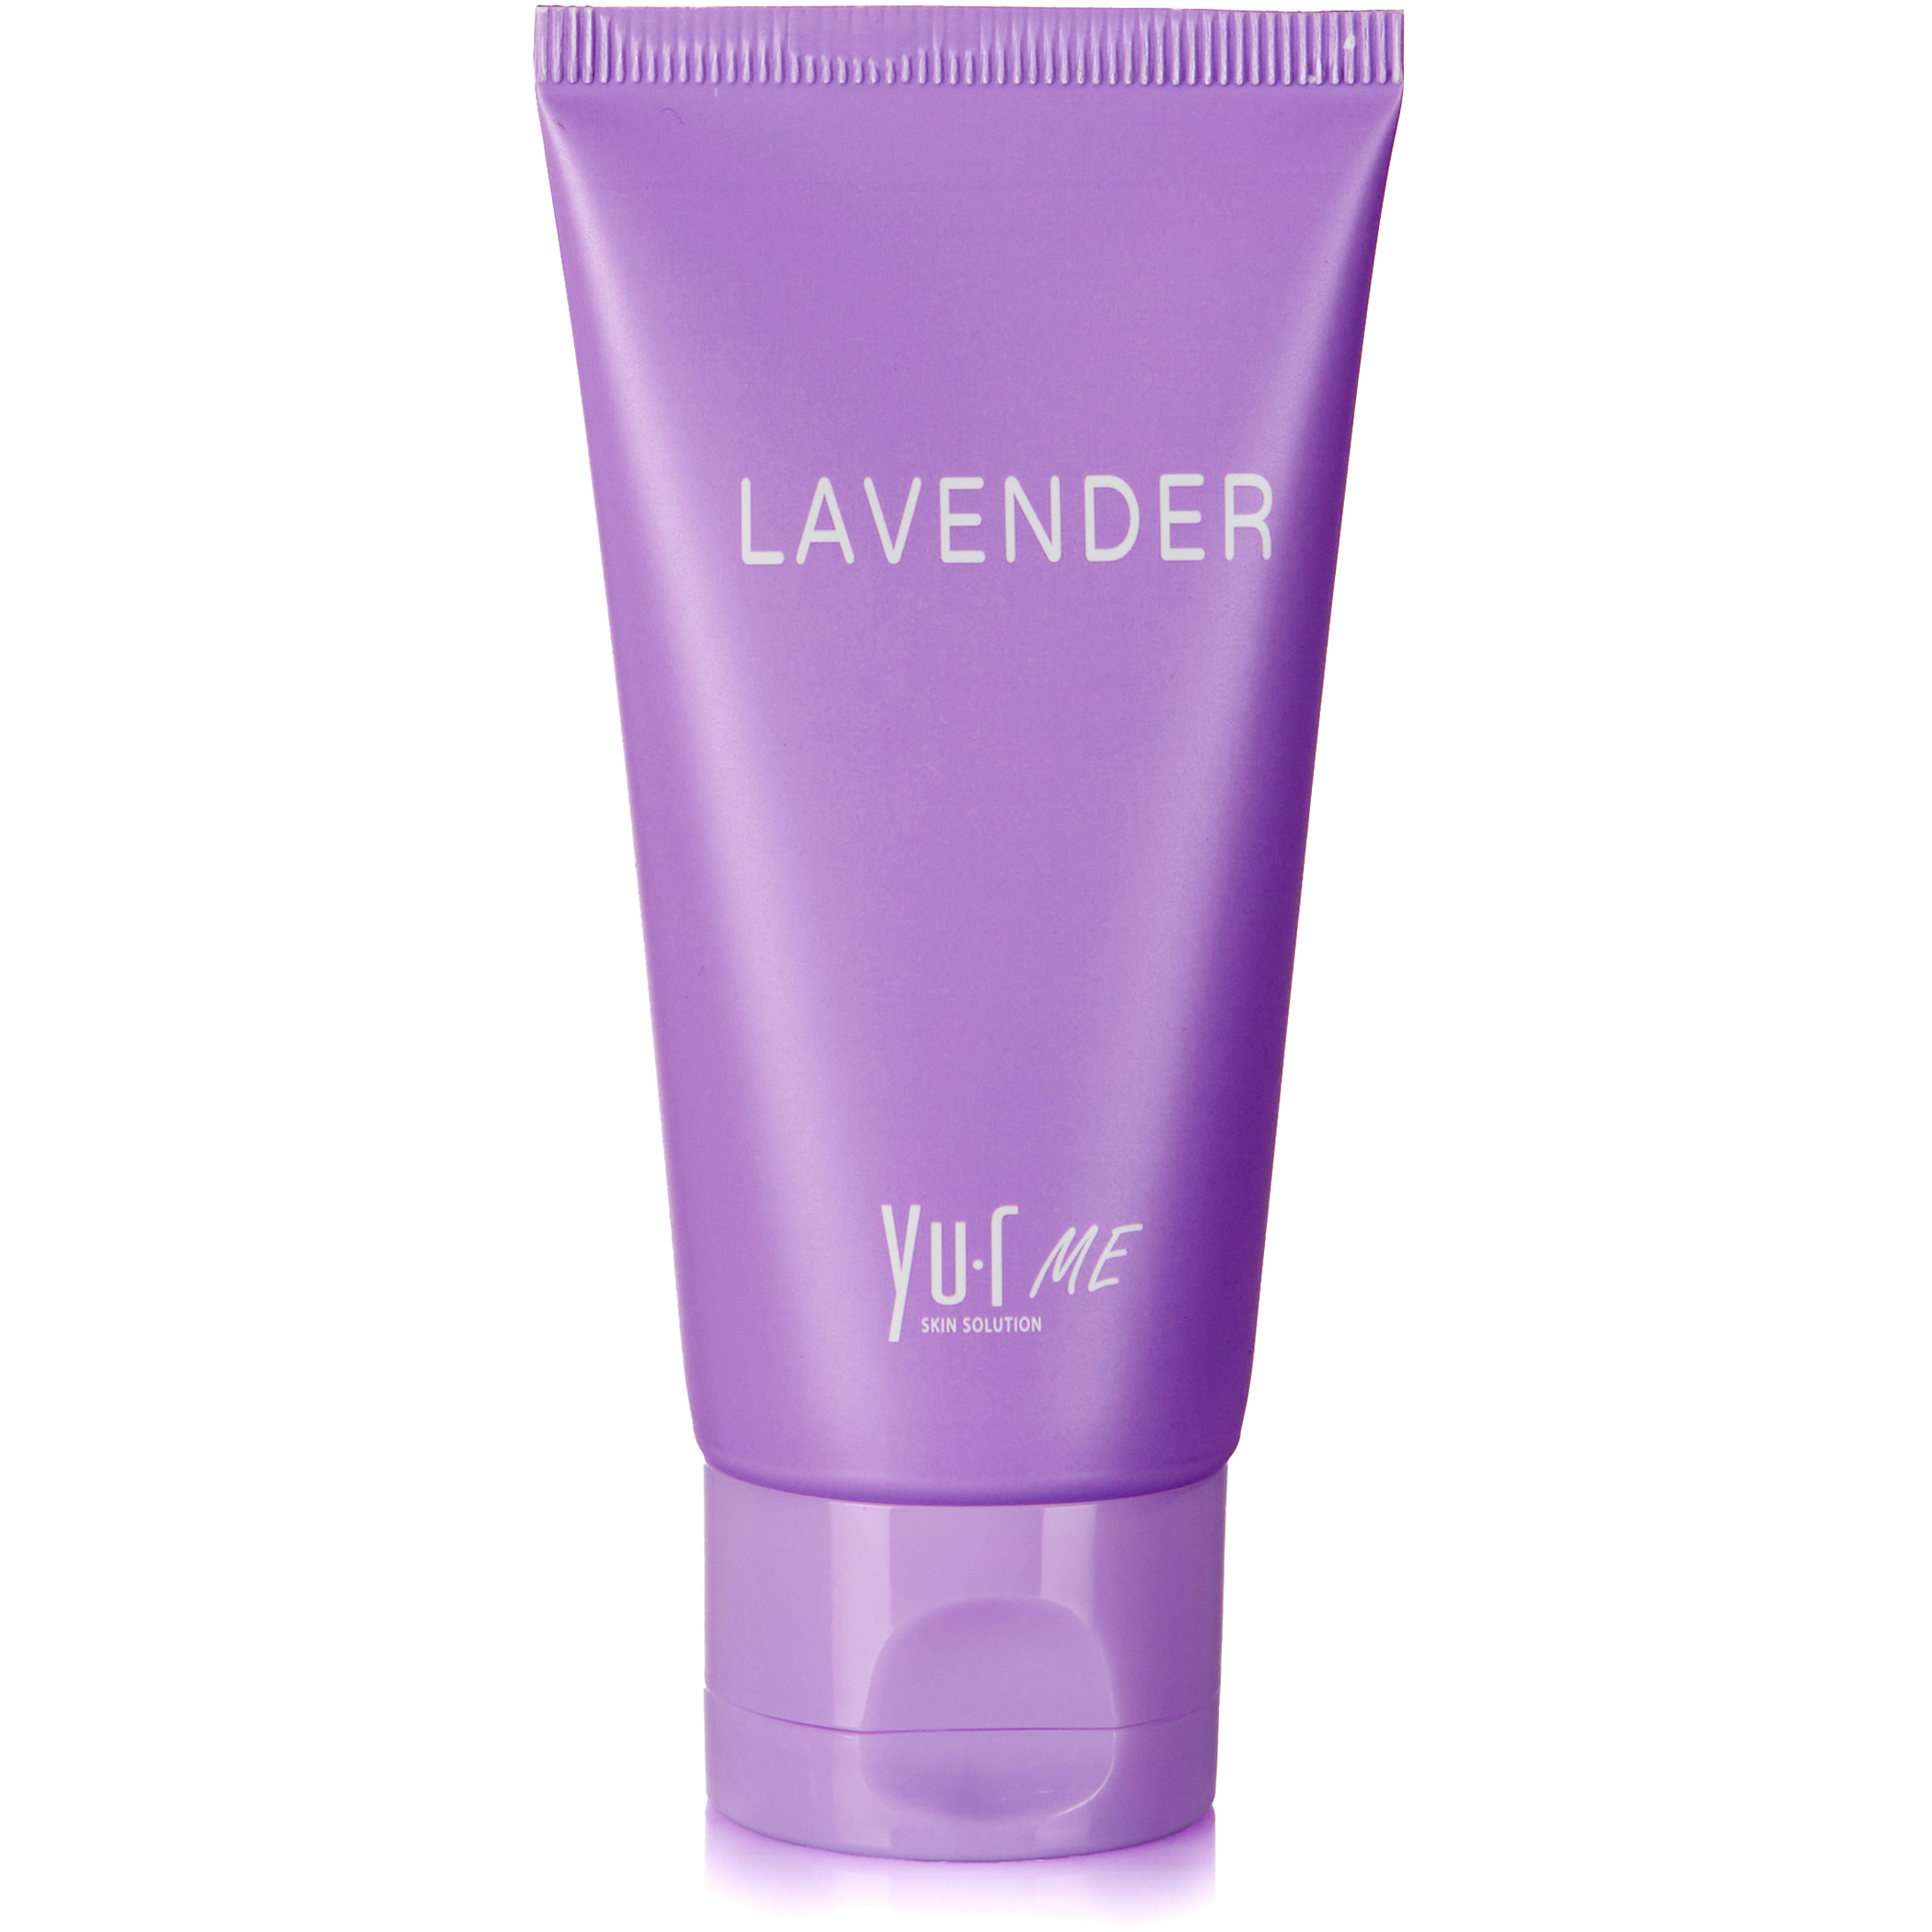 Крем для рук с экстрактом лаванды Yu.R Me Hand Cream Lavender, 50 мл лэтуаль нежный крем для рук с ароматом лаванды purity lavender gentle hand cream